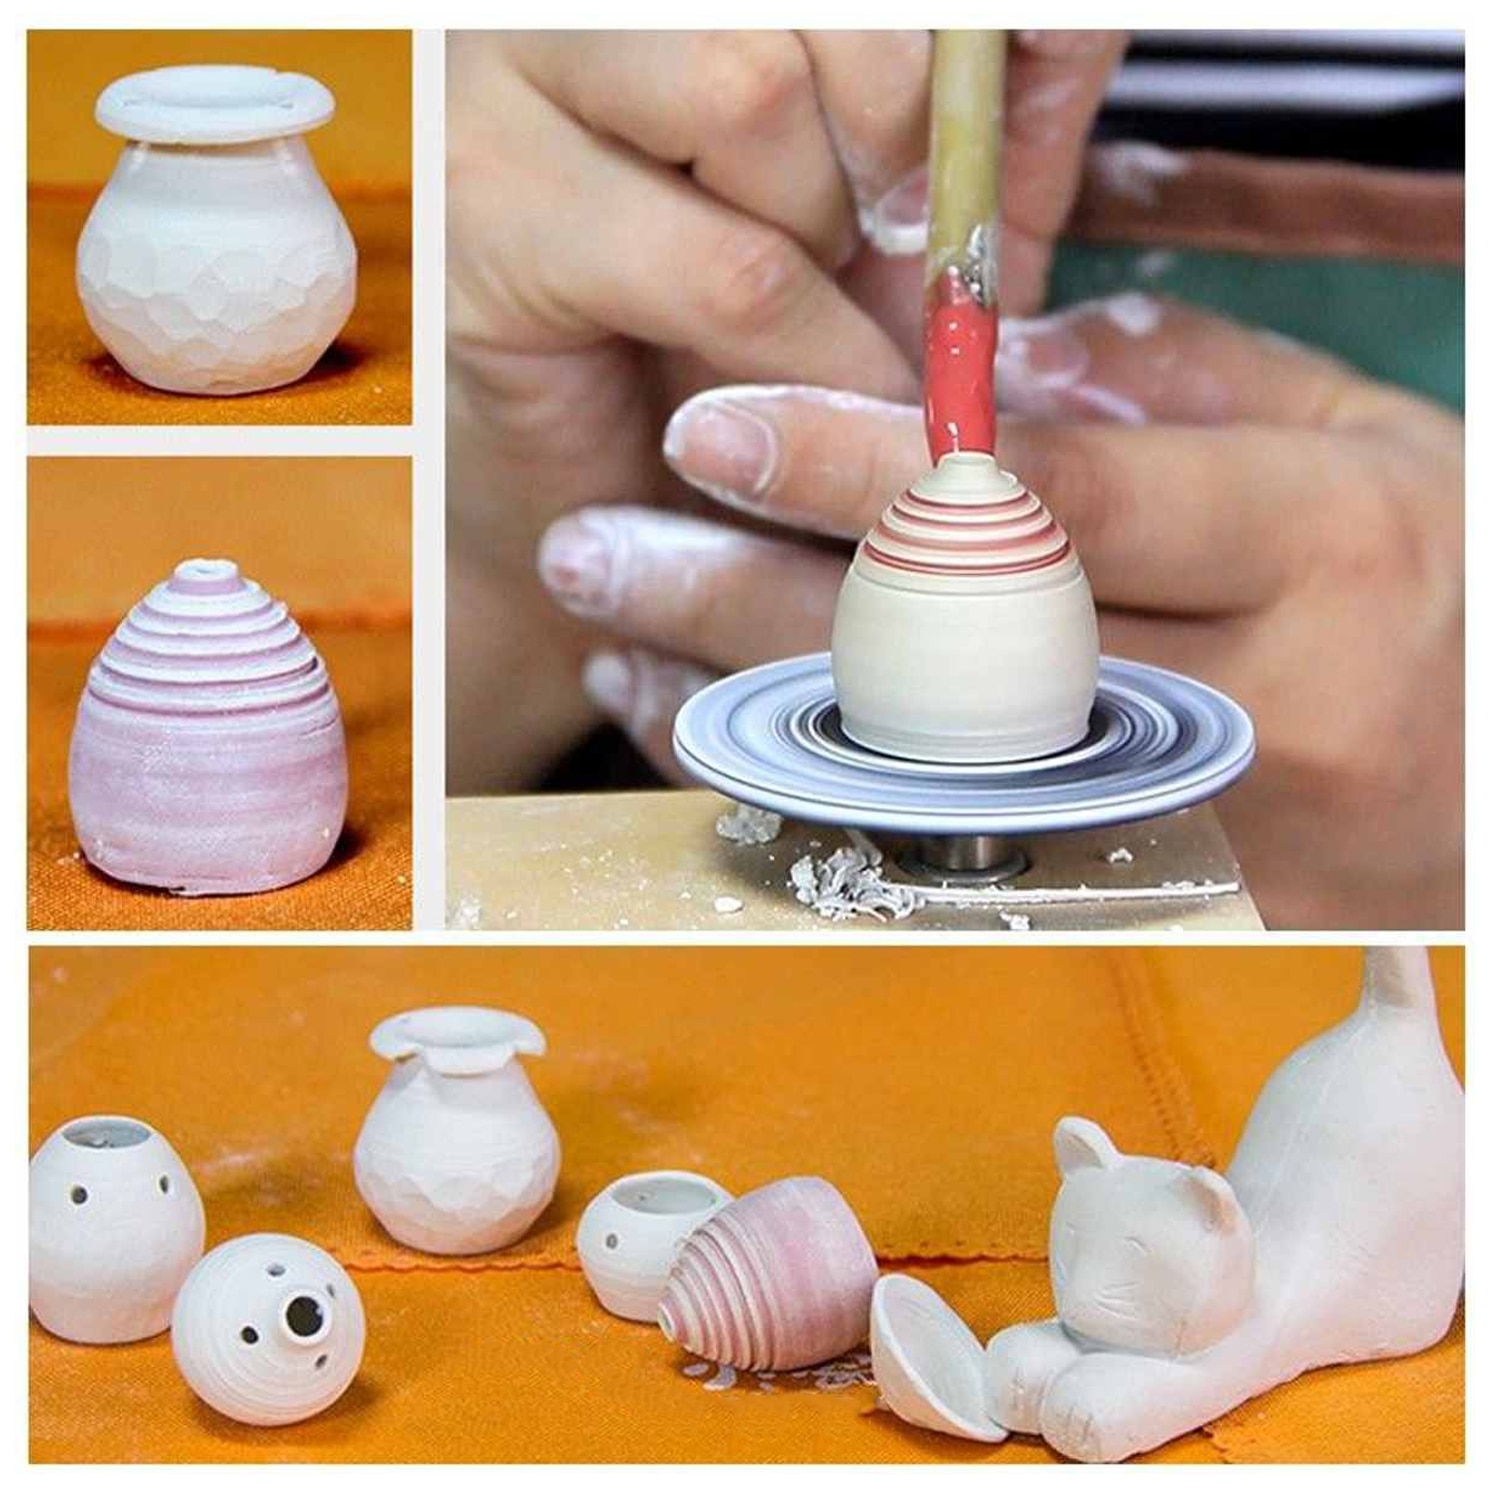 Usb mini keramik hjul maskine 4.3cm elektrisk pladespiller håndlavet ler kaste gør keramisk maskine diy håndværk